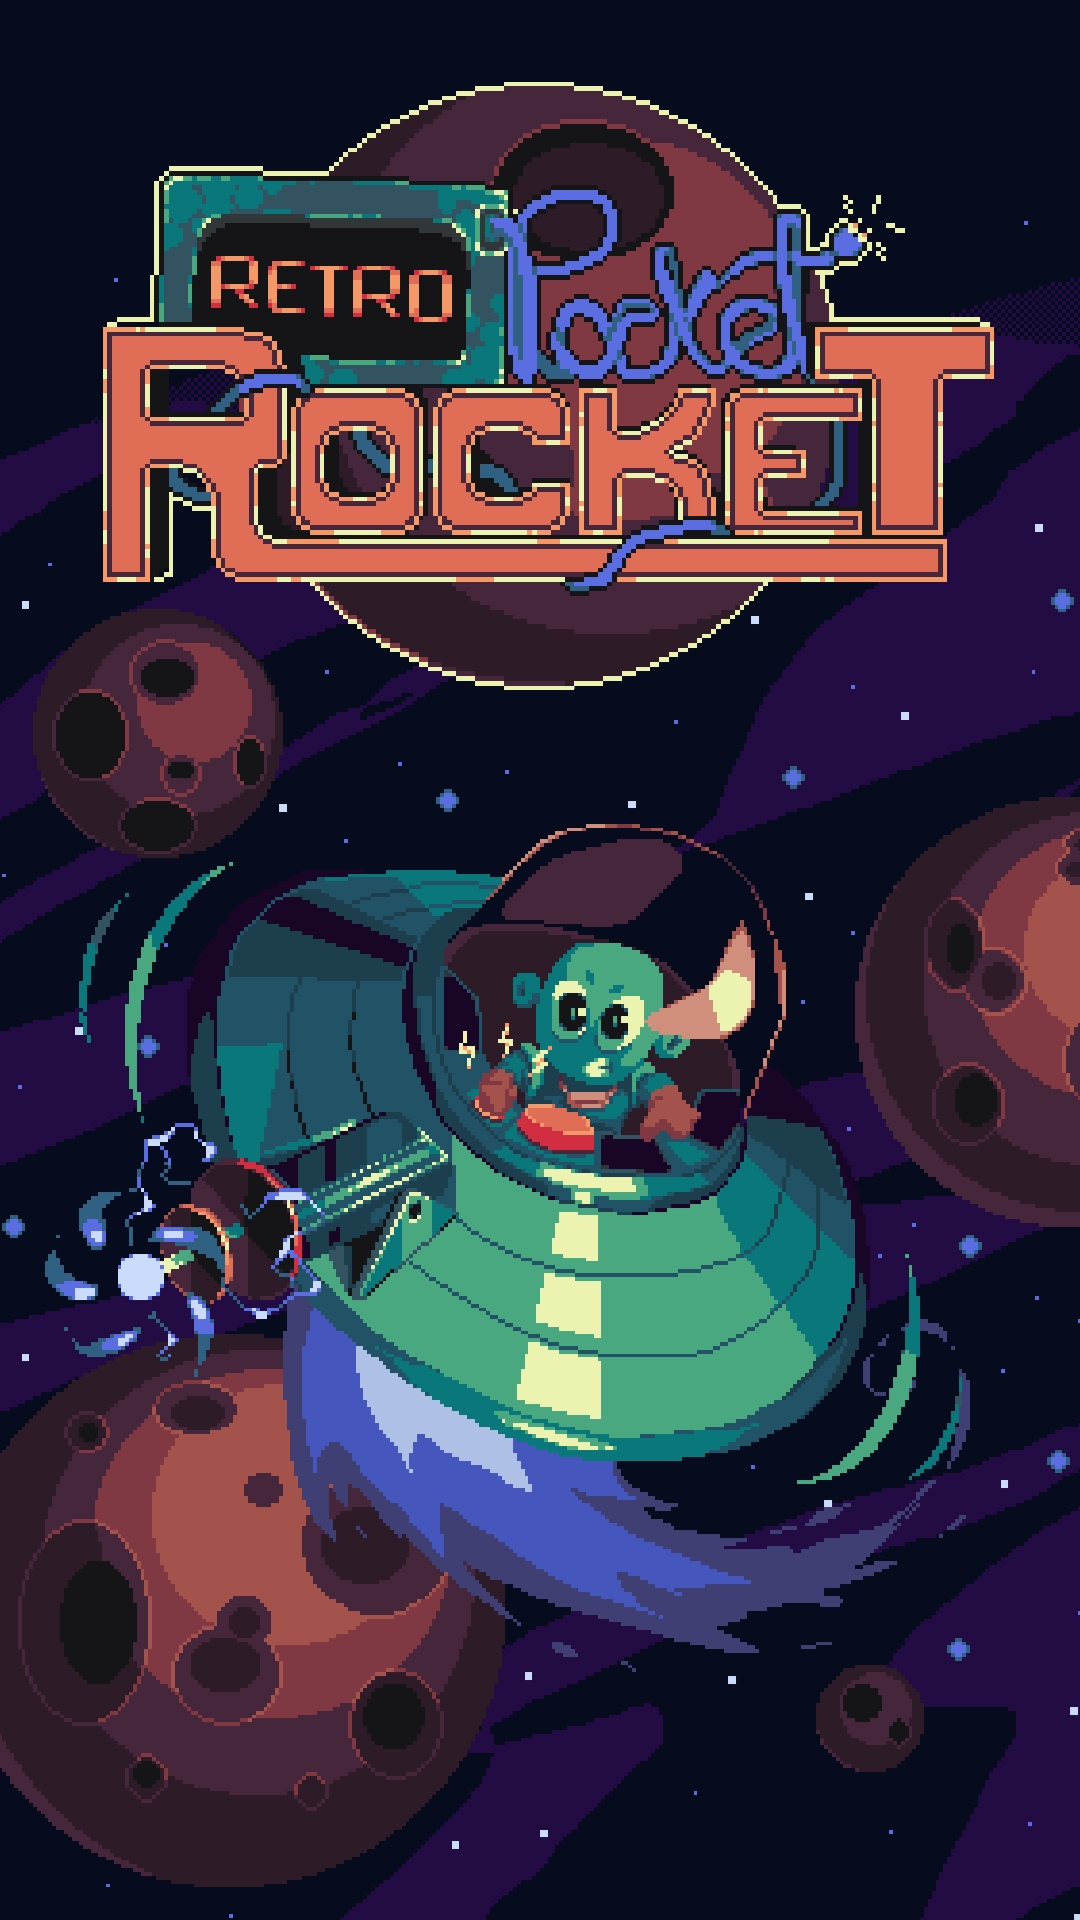 Scarica Retro Pocket Rocket gratis per Android.